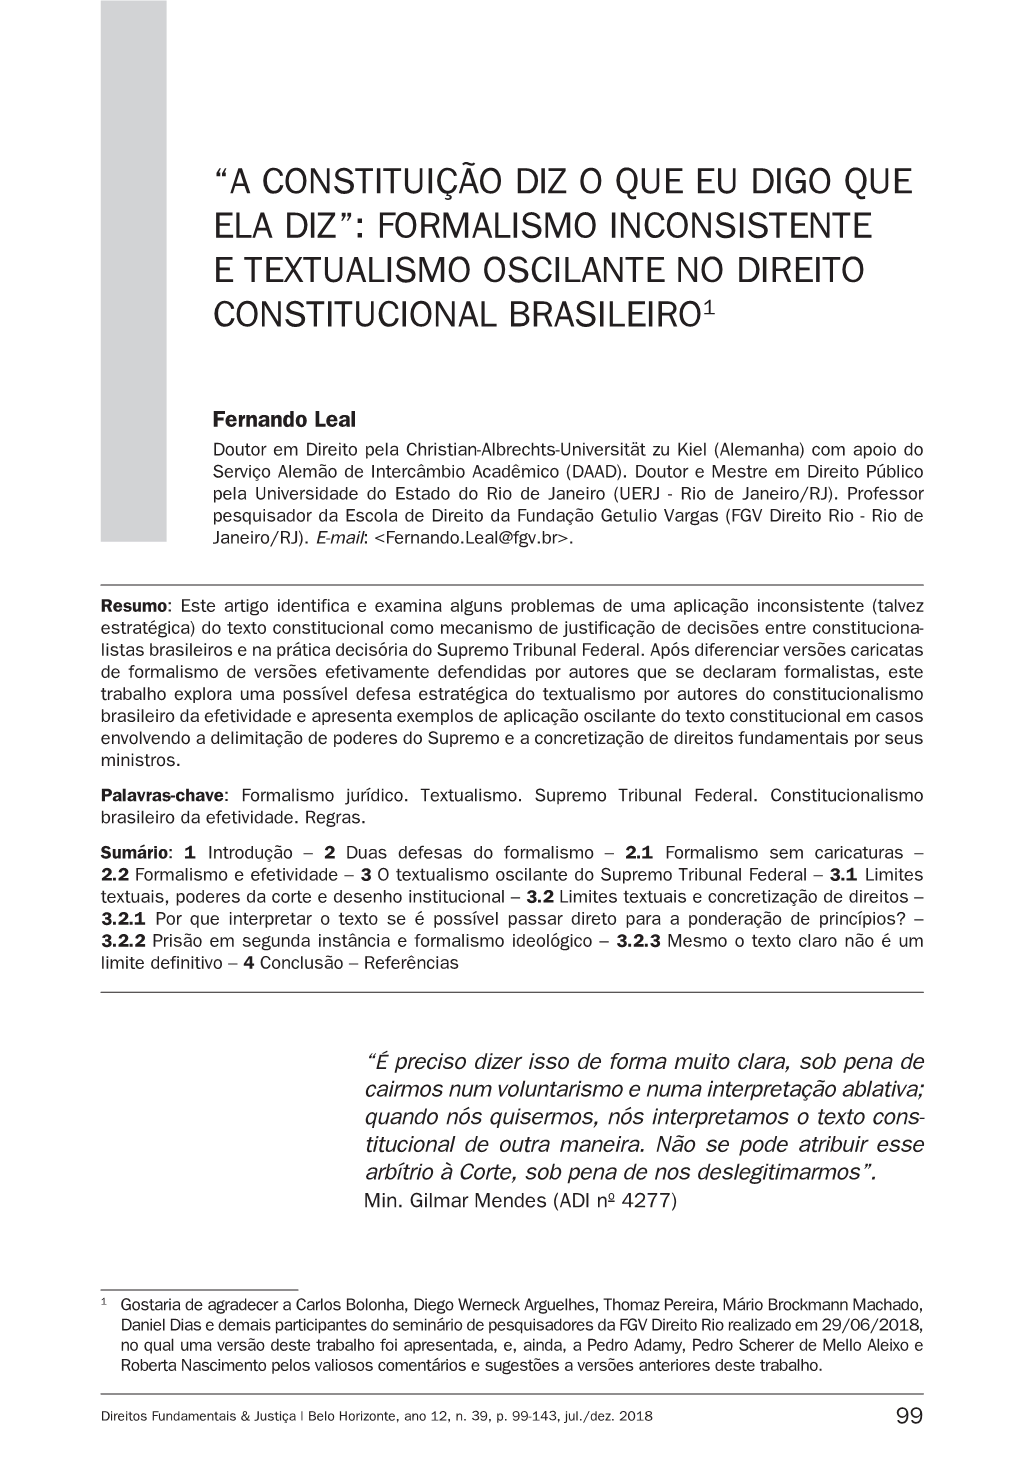 Formalismo Inconsistente E Textualismo Oscilante No Direito Constitucional Brasileiro1